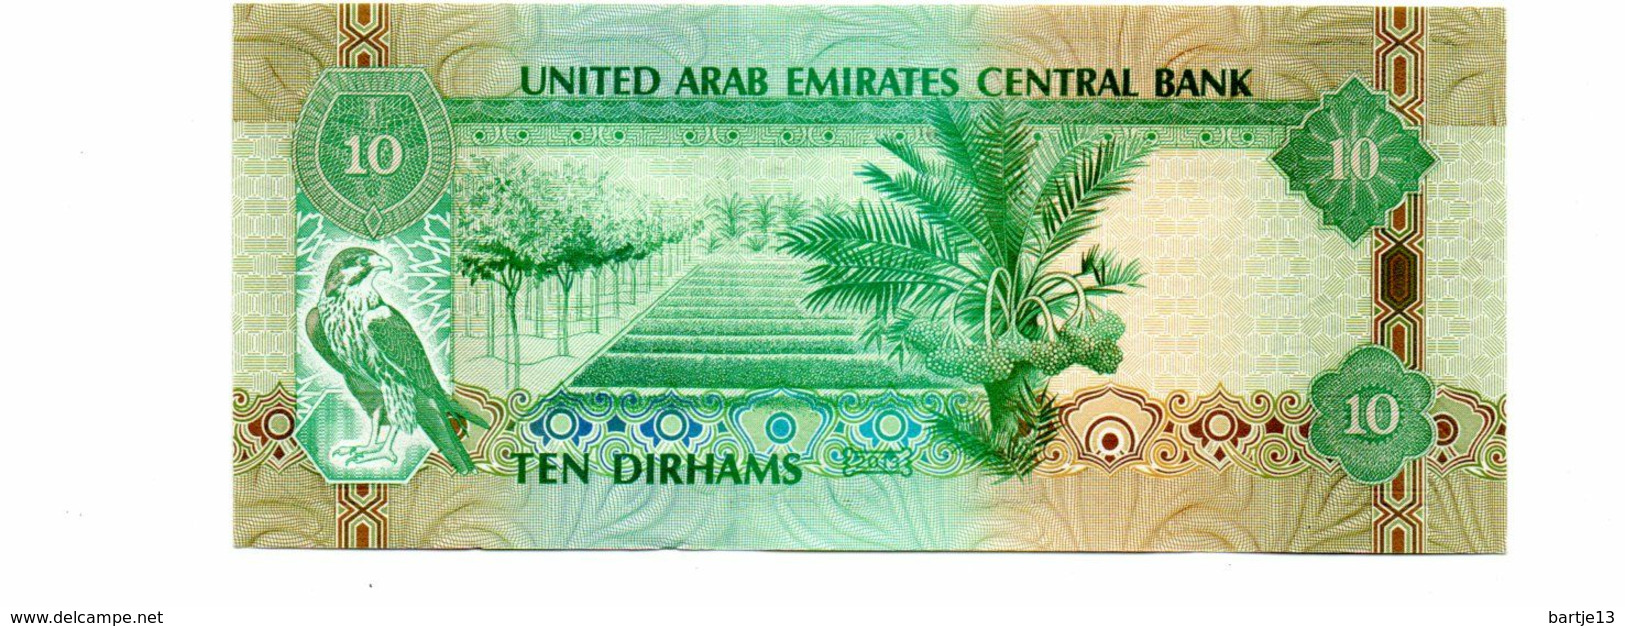 UNITED ARAB EMIRATES TEN DIRHAMS PICK 27 UNCIRCULATED - United Arab Emirates